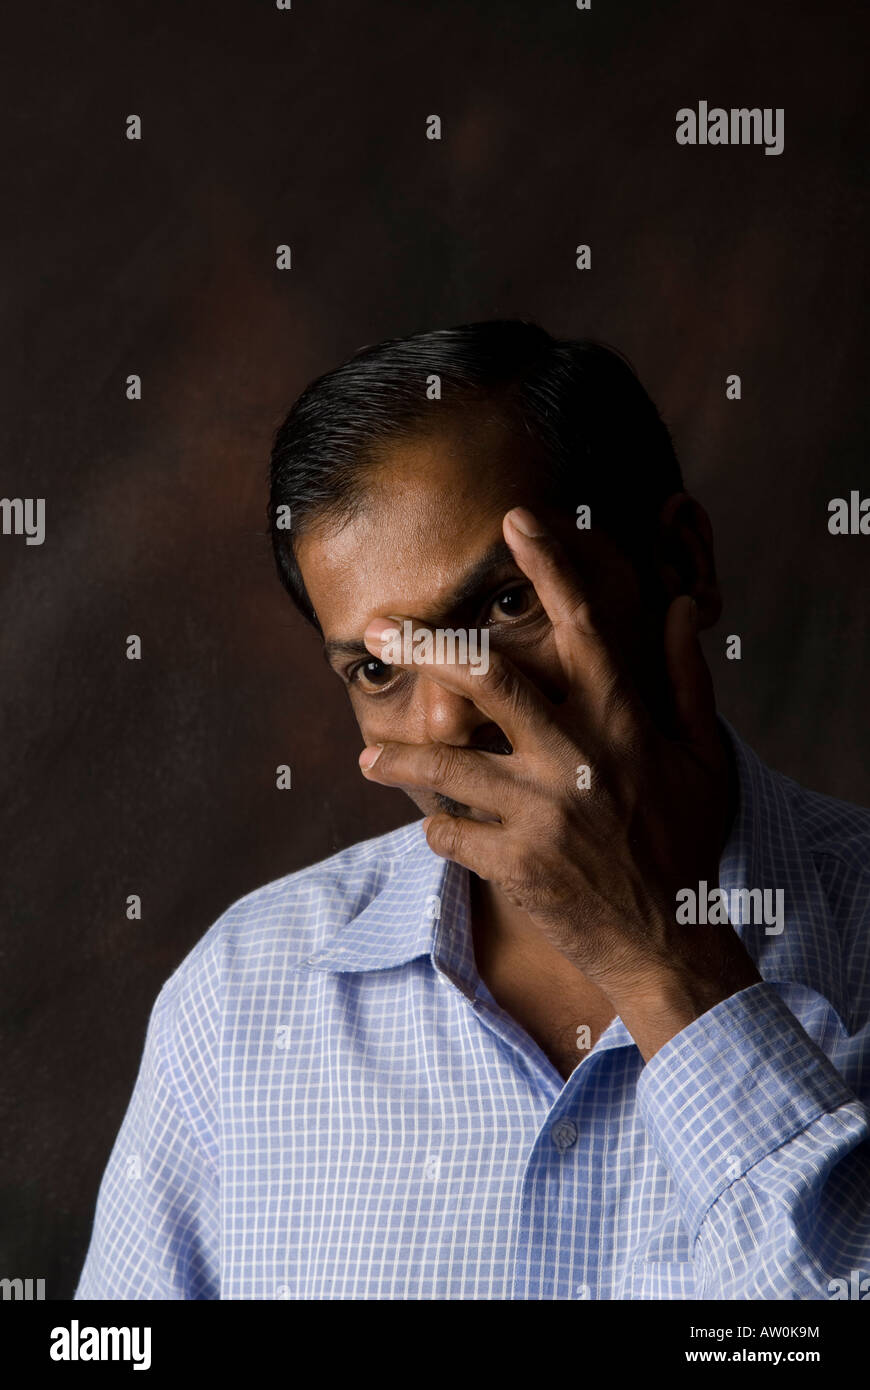 Indian man hiding face Stock Photo